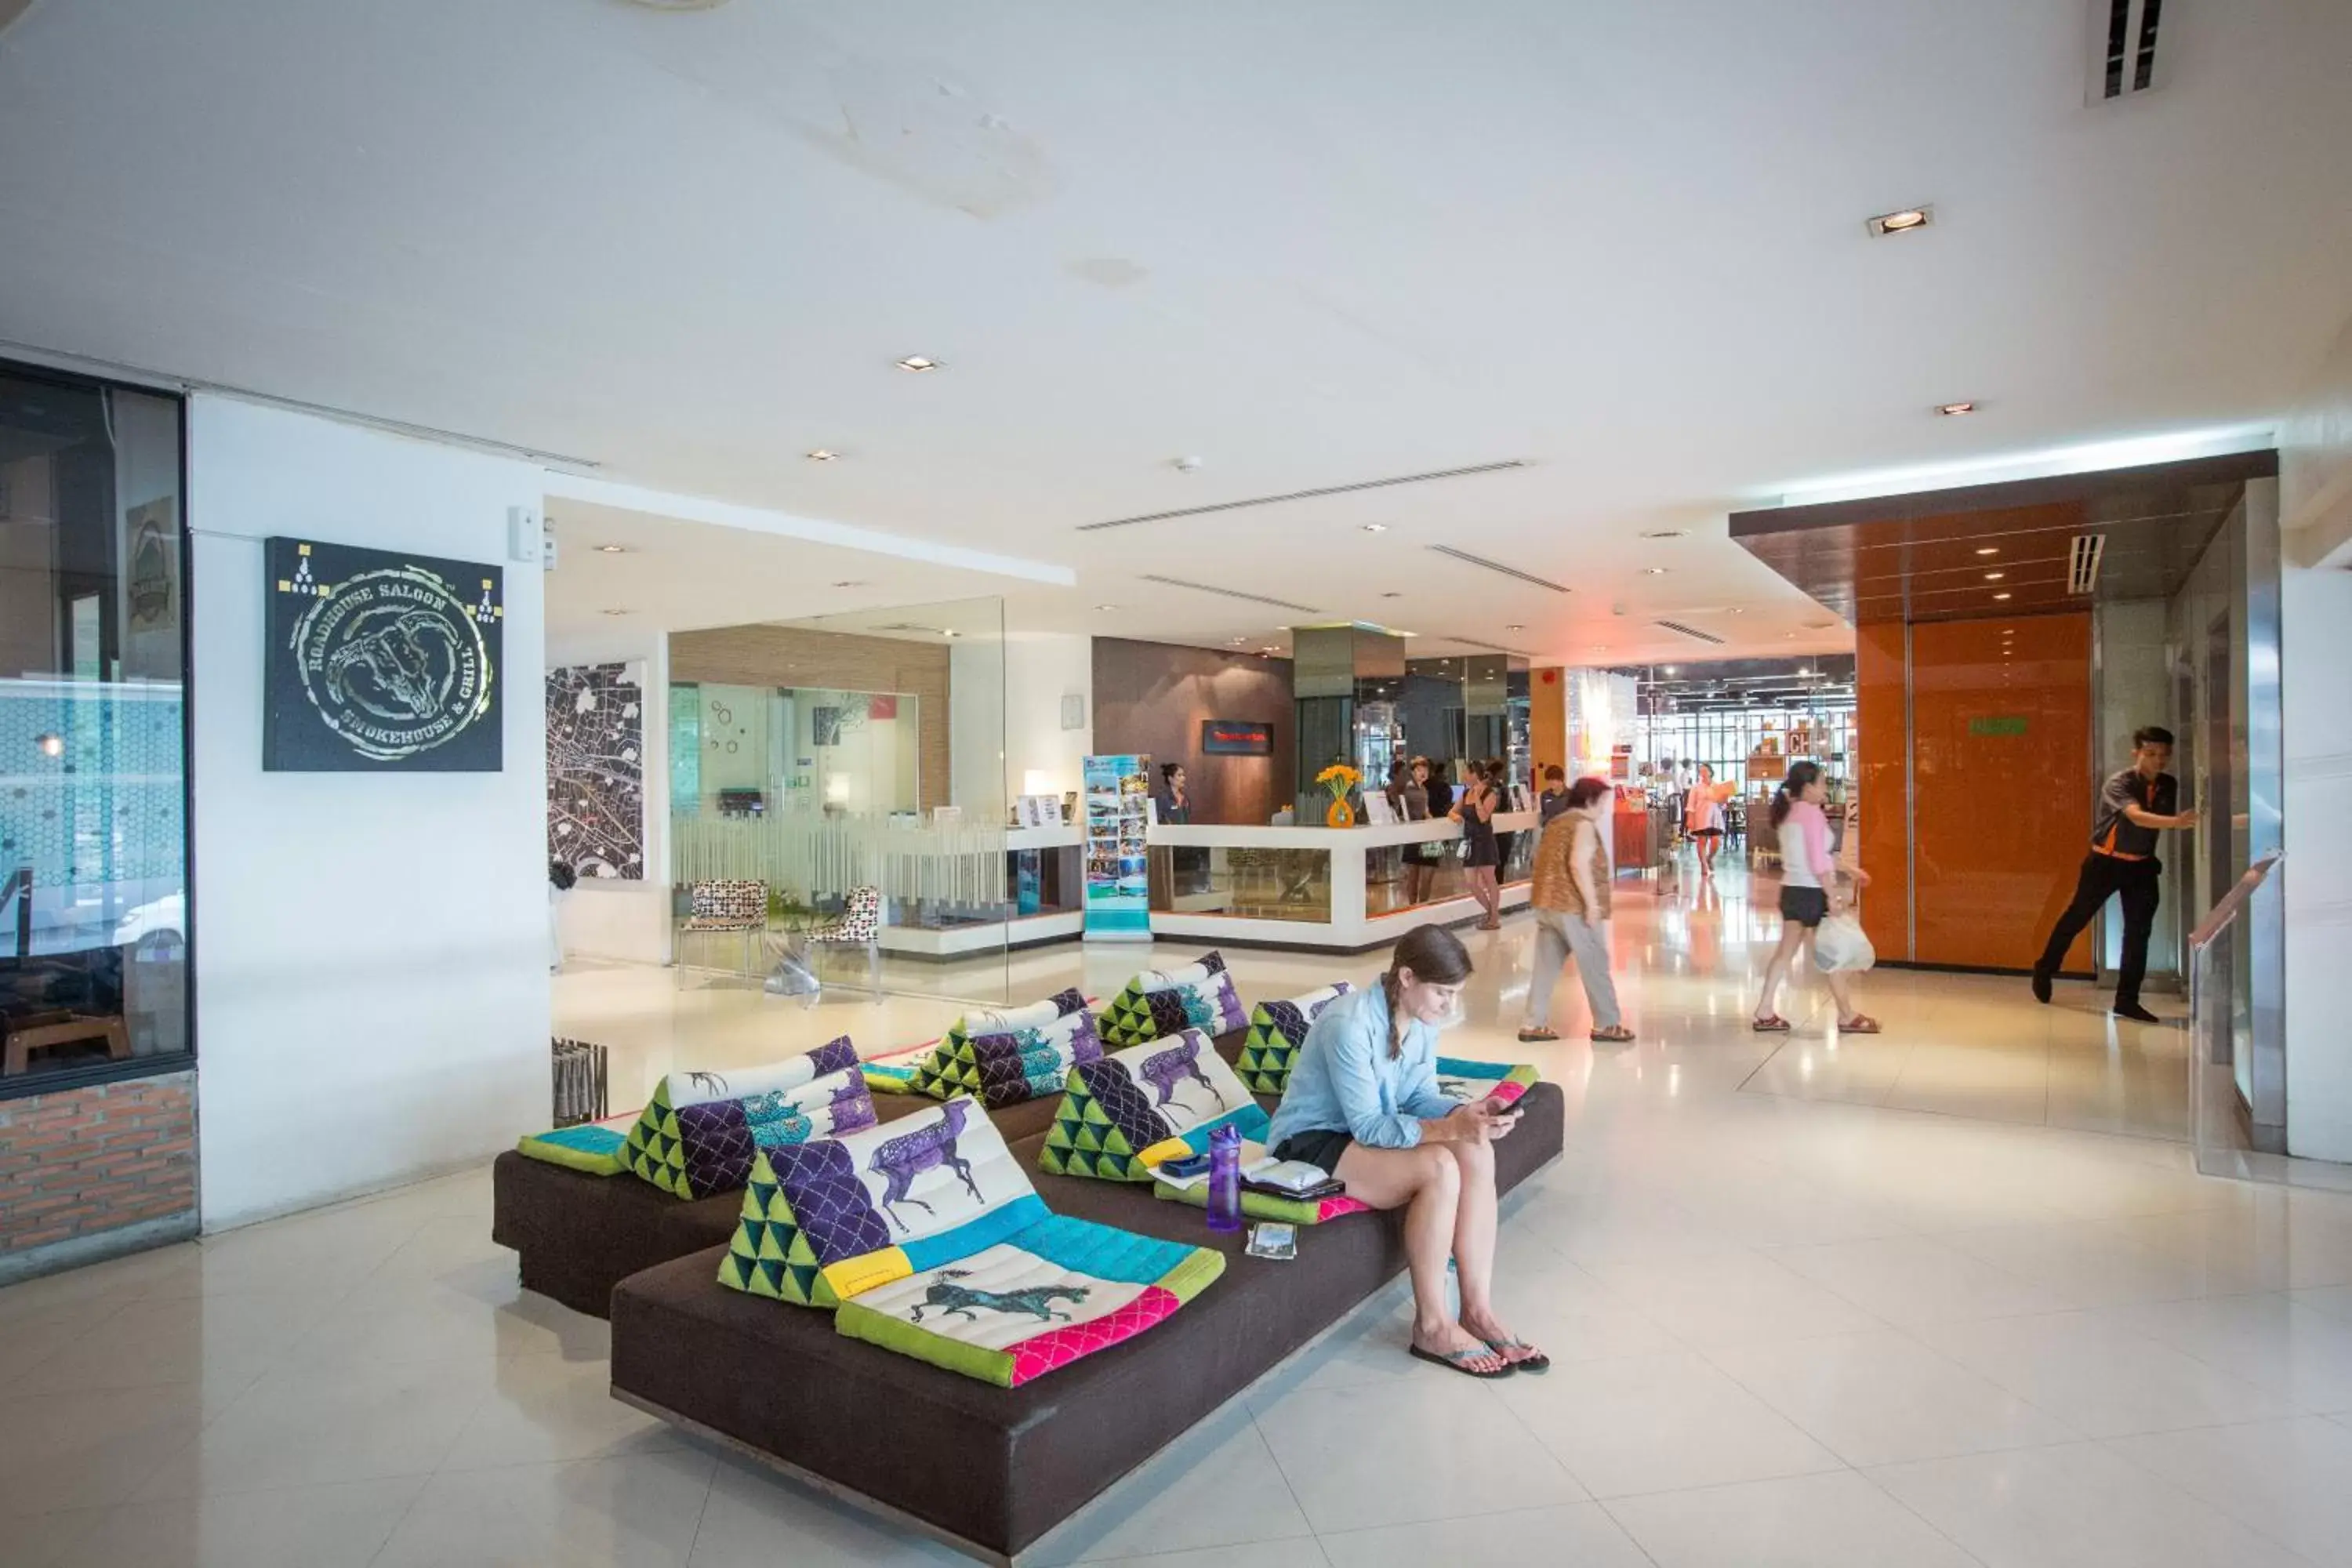 Lobby or reception in Trinity Silom Hotel